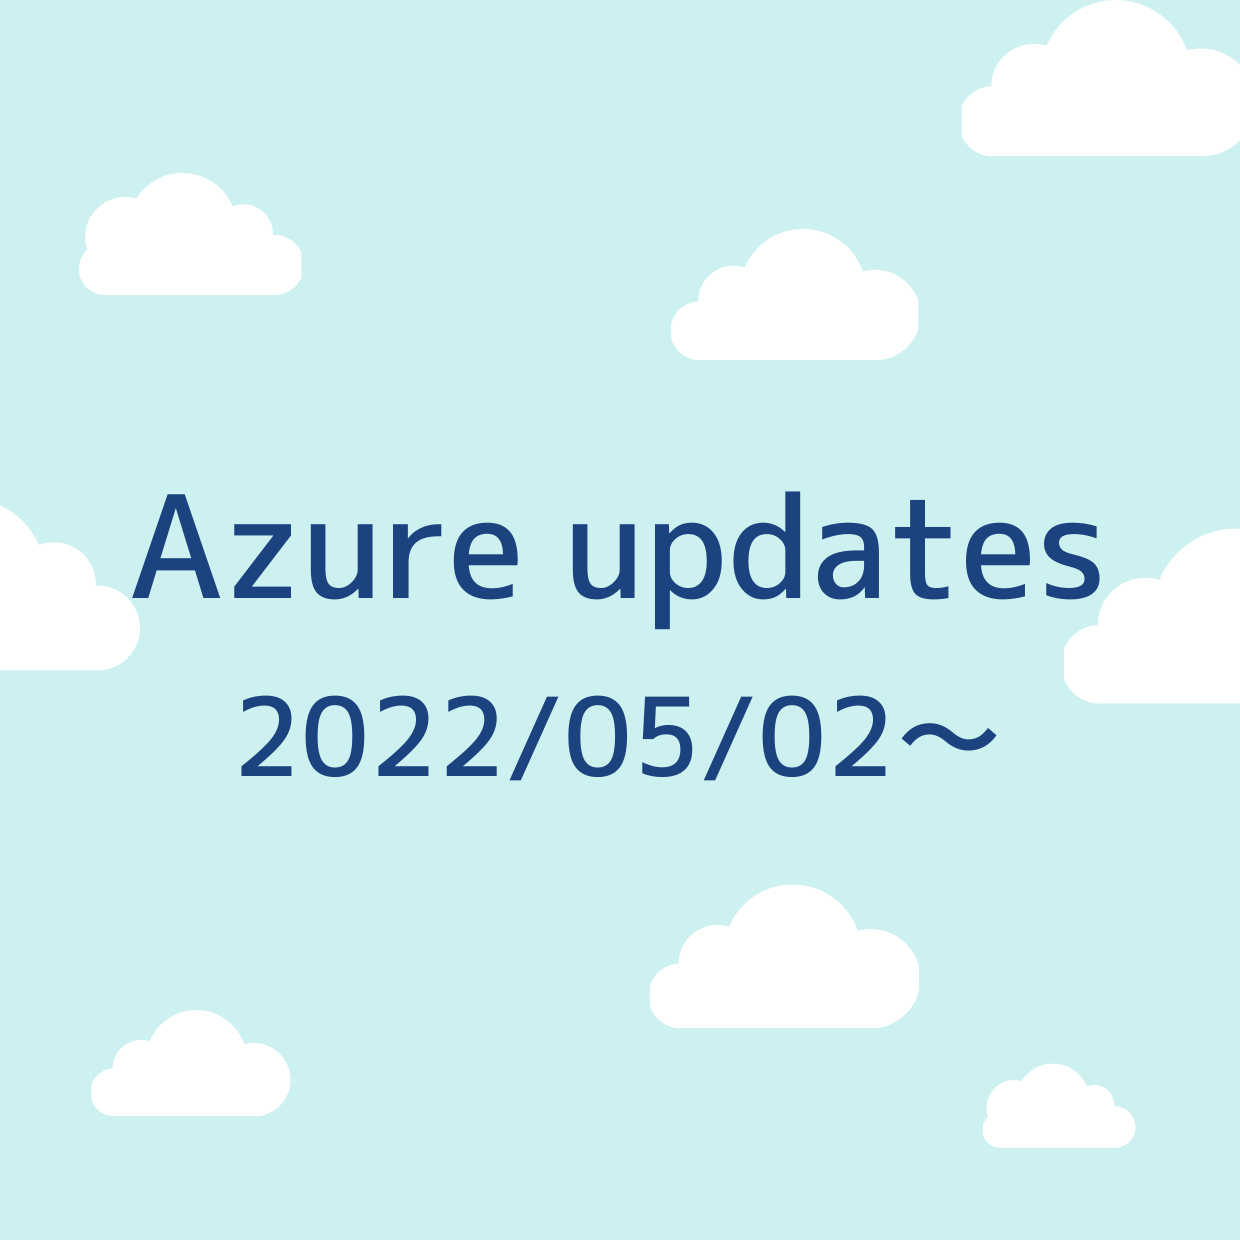 2022/05/02 週の Azure updates 日本語速報